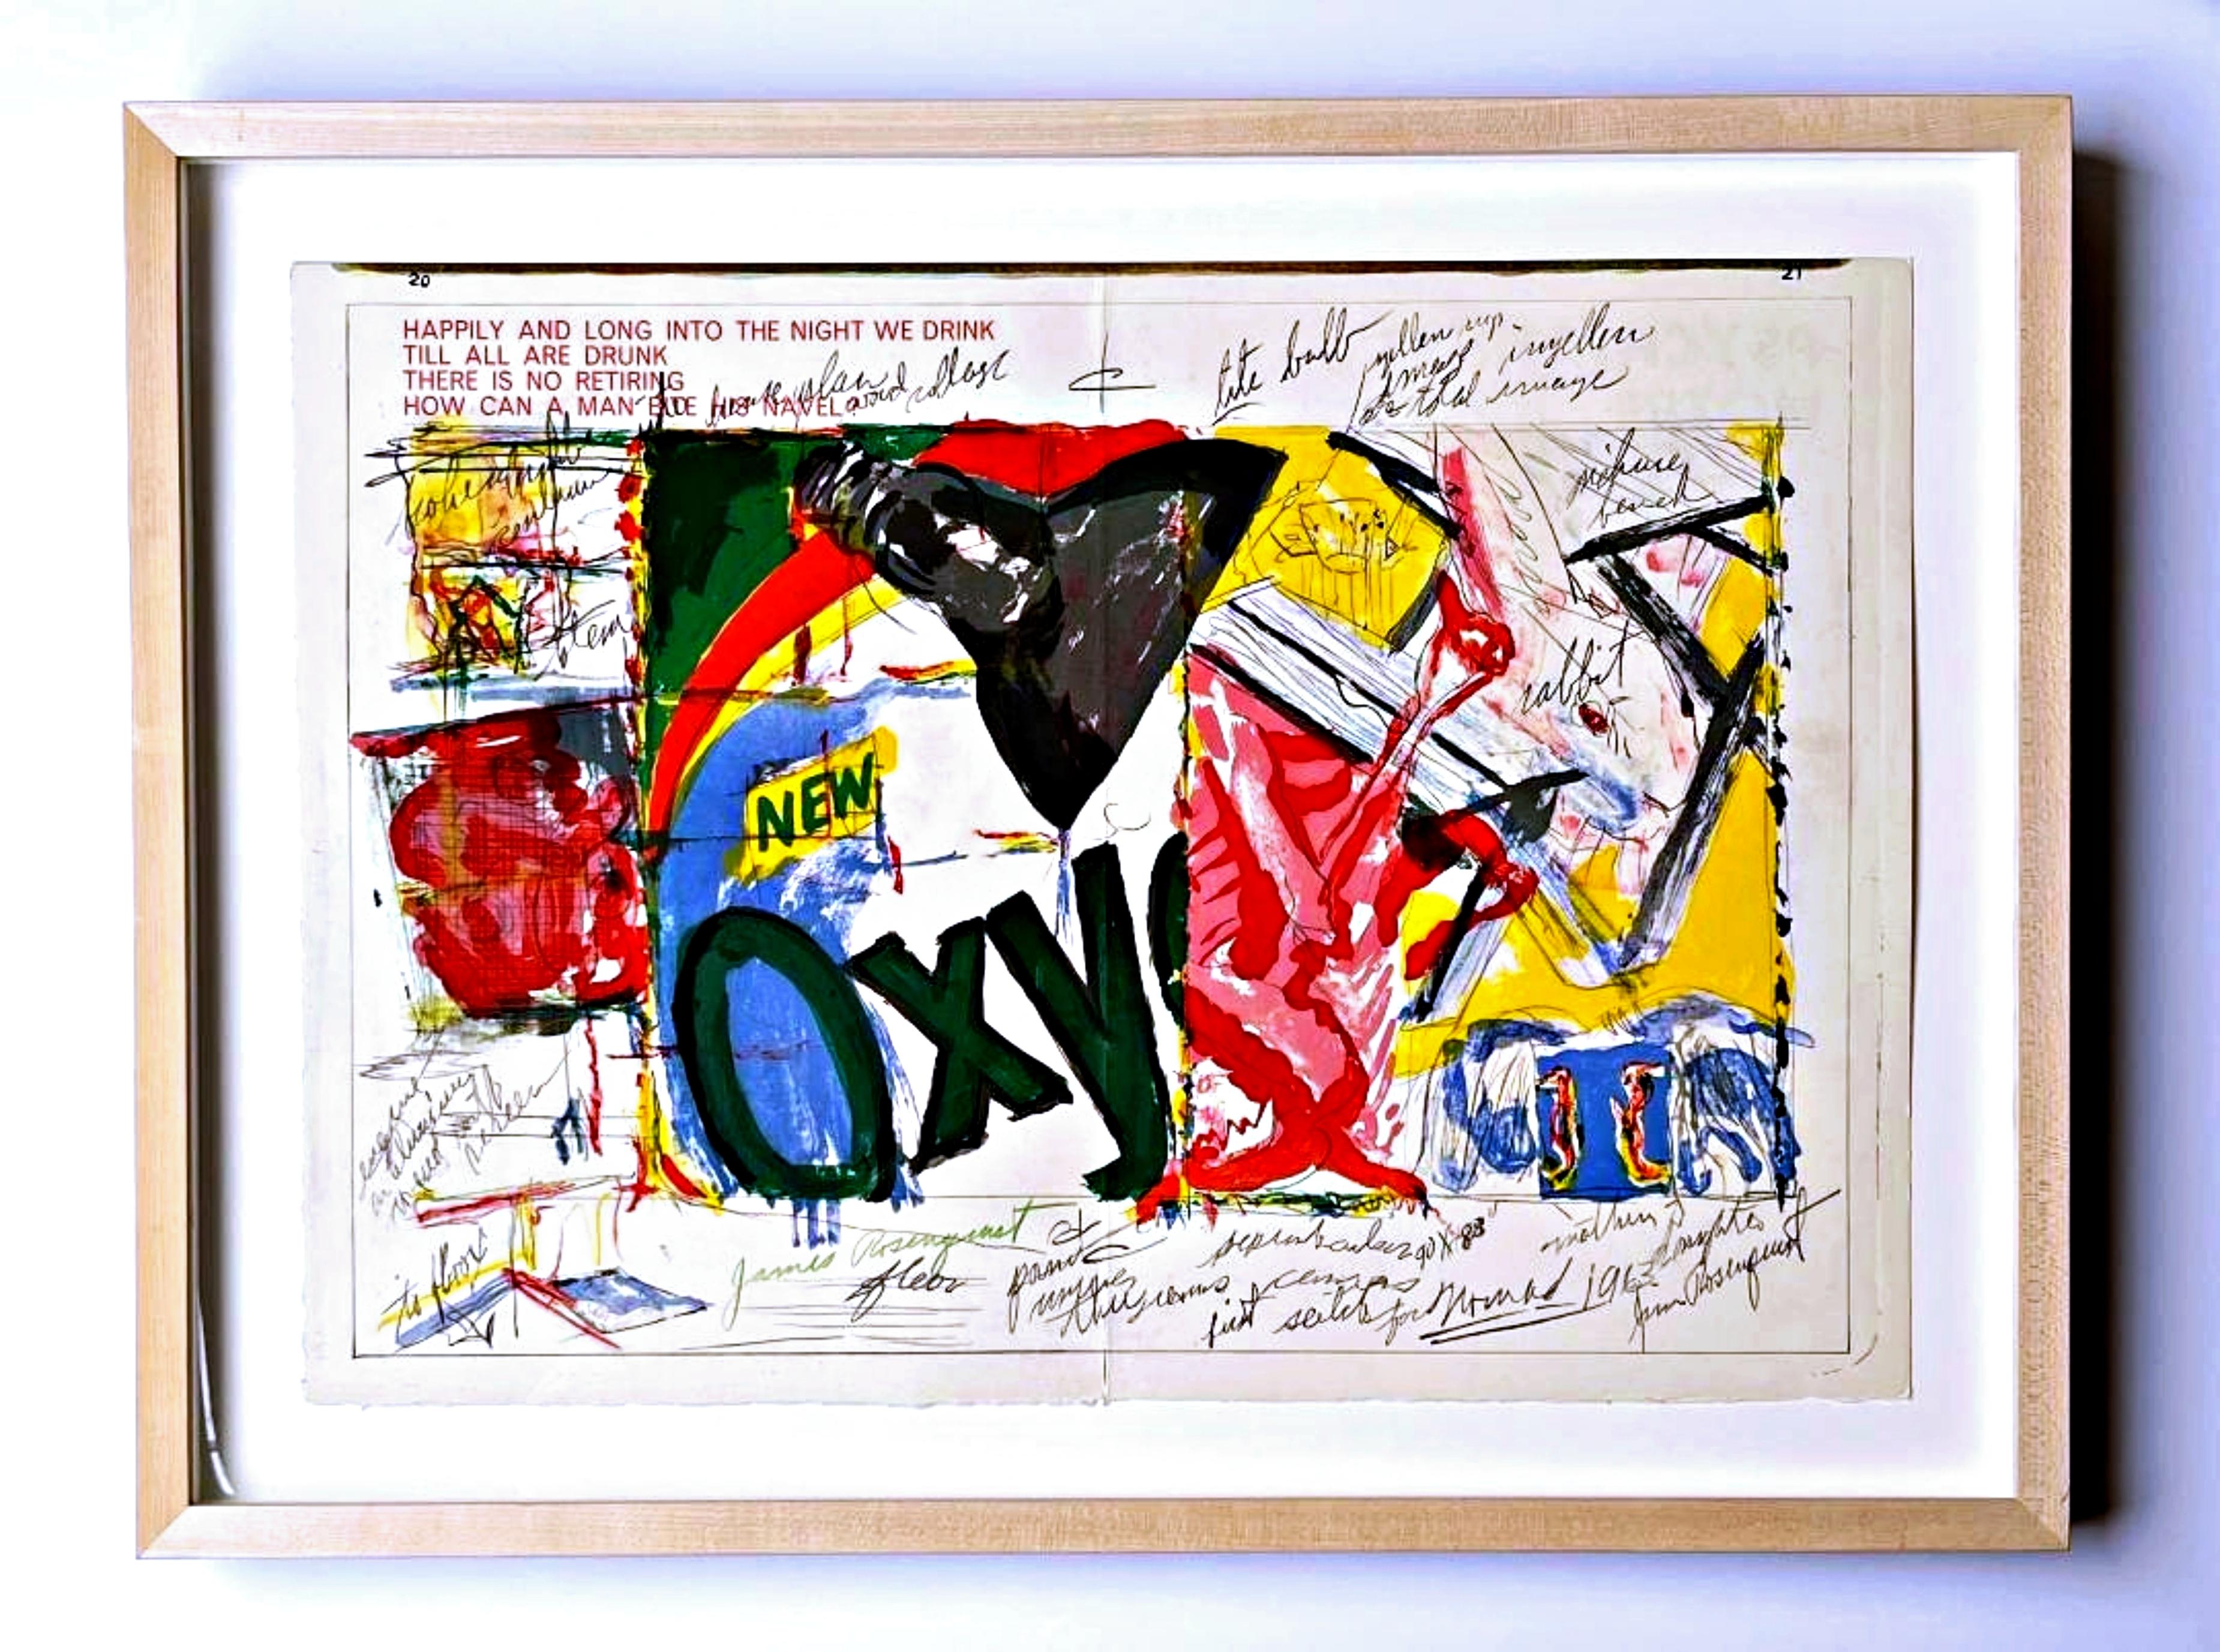 James Rosenquist
Oxy, tiré de l'édition de luxe signée à la main du One Cent Life Portfolio, 1964
Lithographie étalée sur deux feuilles sur papier vélin
Signé à la main en vert par James Rosenquist
Cadre inclus : élégamment flottant et encadré dans